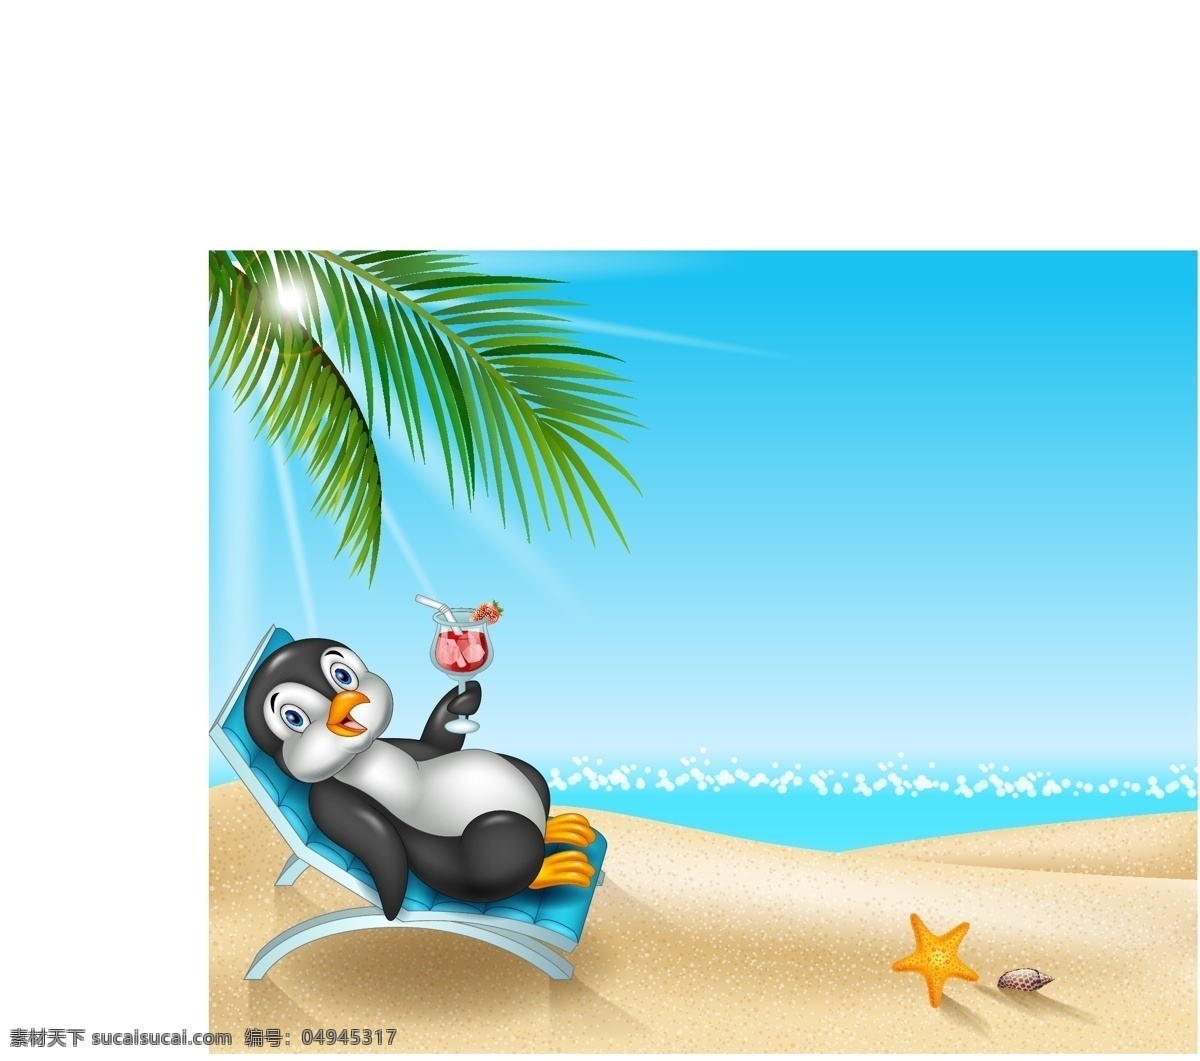 度假 企鹅 插画 可爱 卡通 夏天